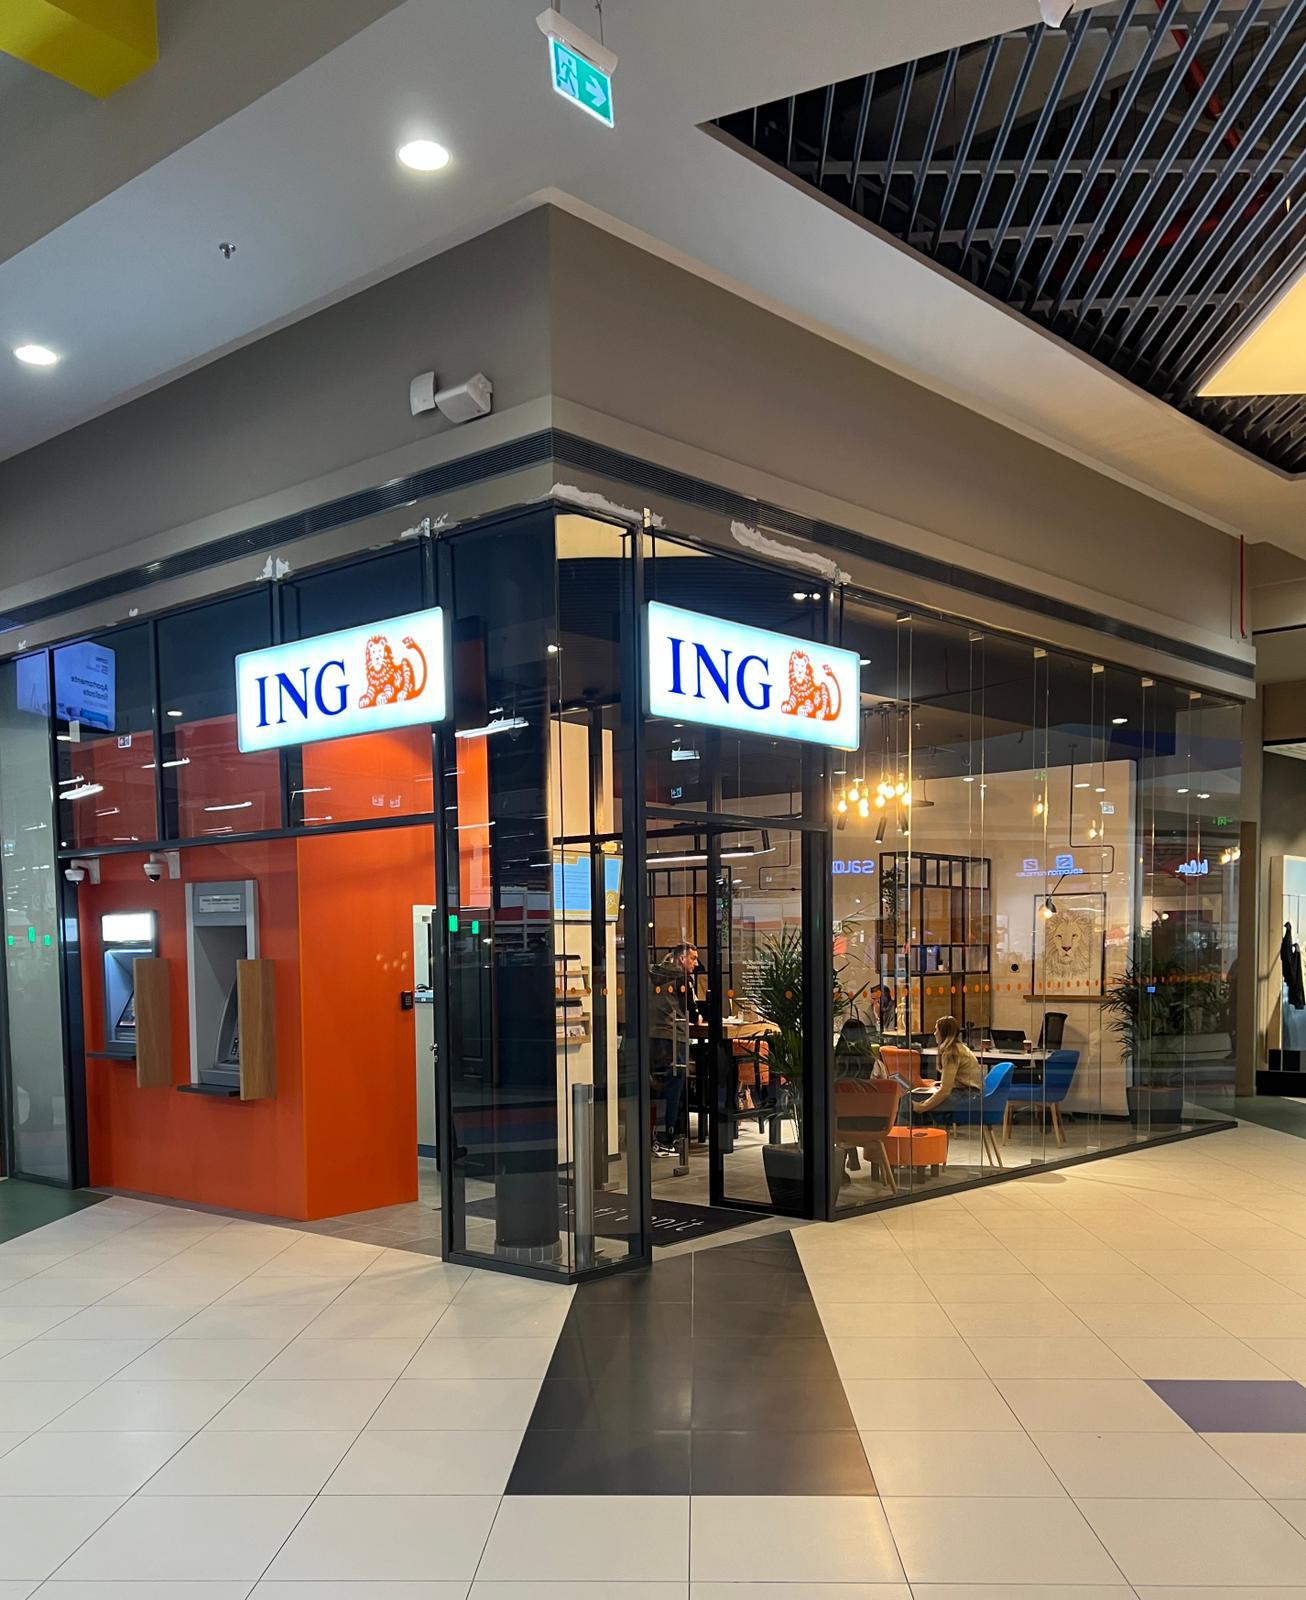 ING Bank România a inaugurat un nou office în Coresi Shopping Resort din Braşov, prin transformarea unui punct de lucru şi creşterea numărului de consultanţi disponibili